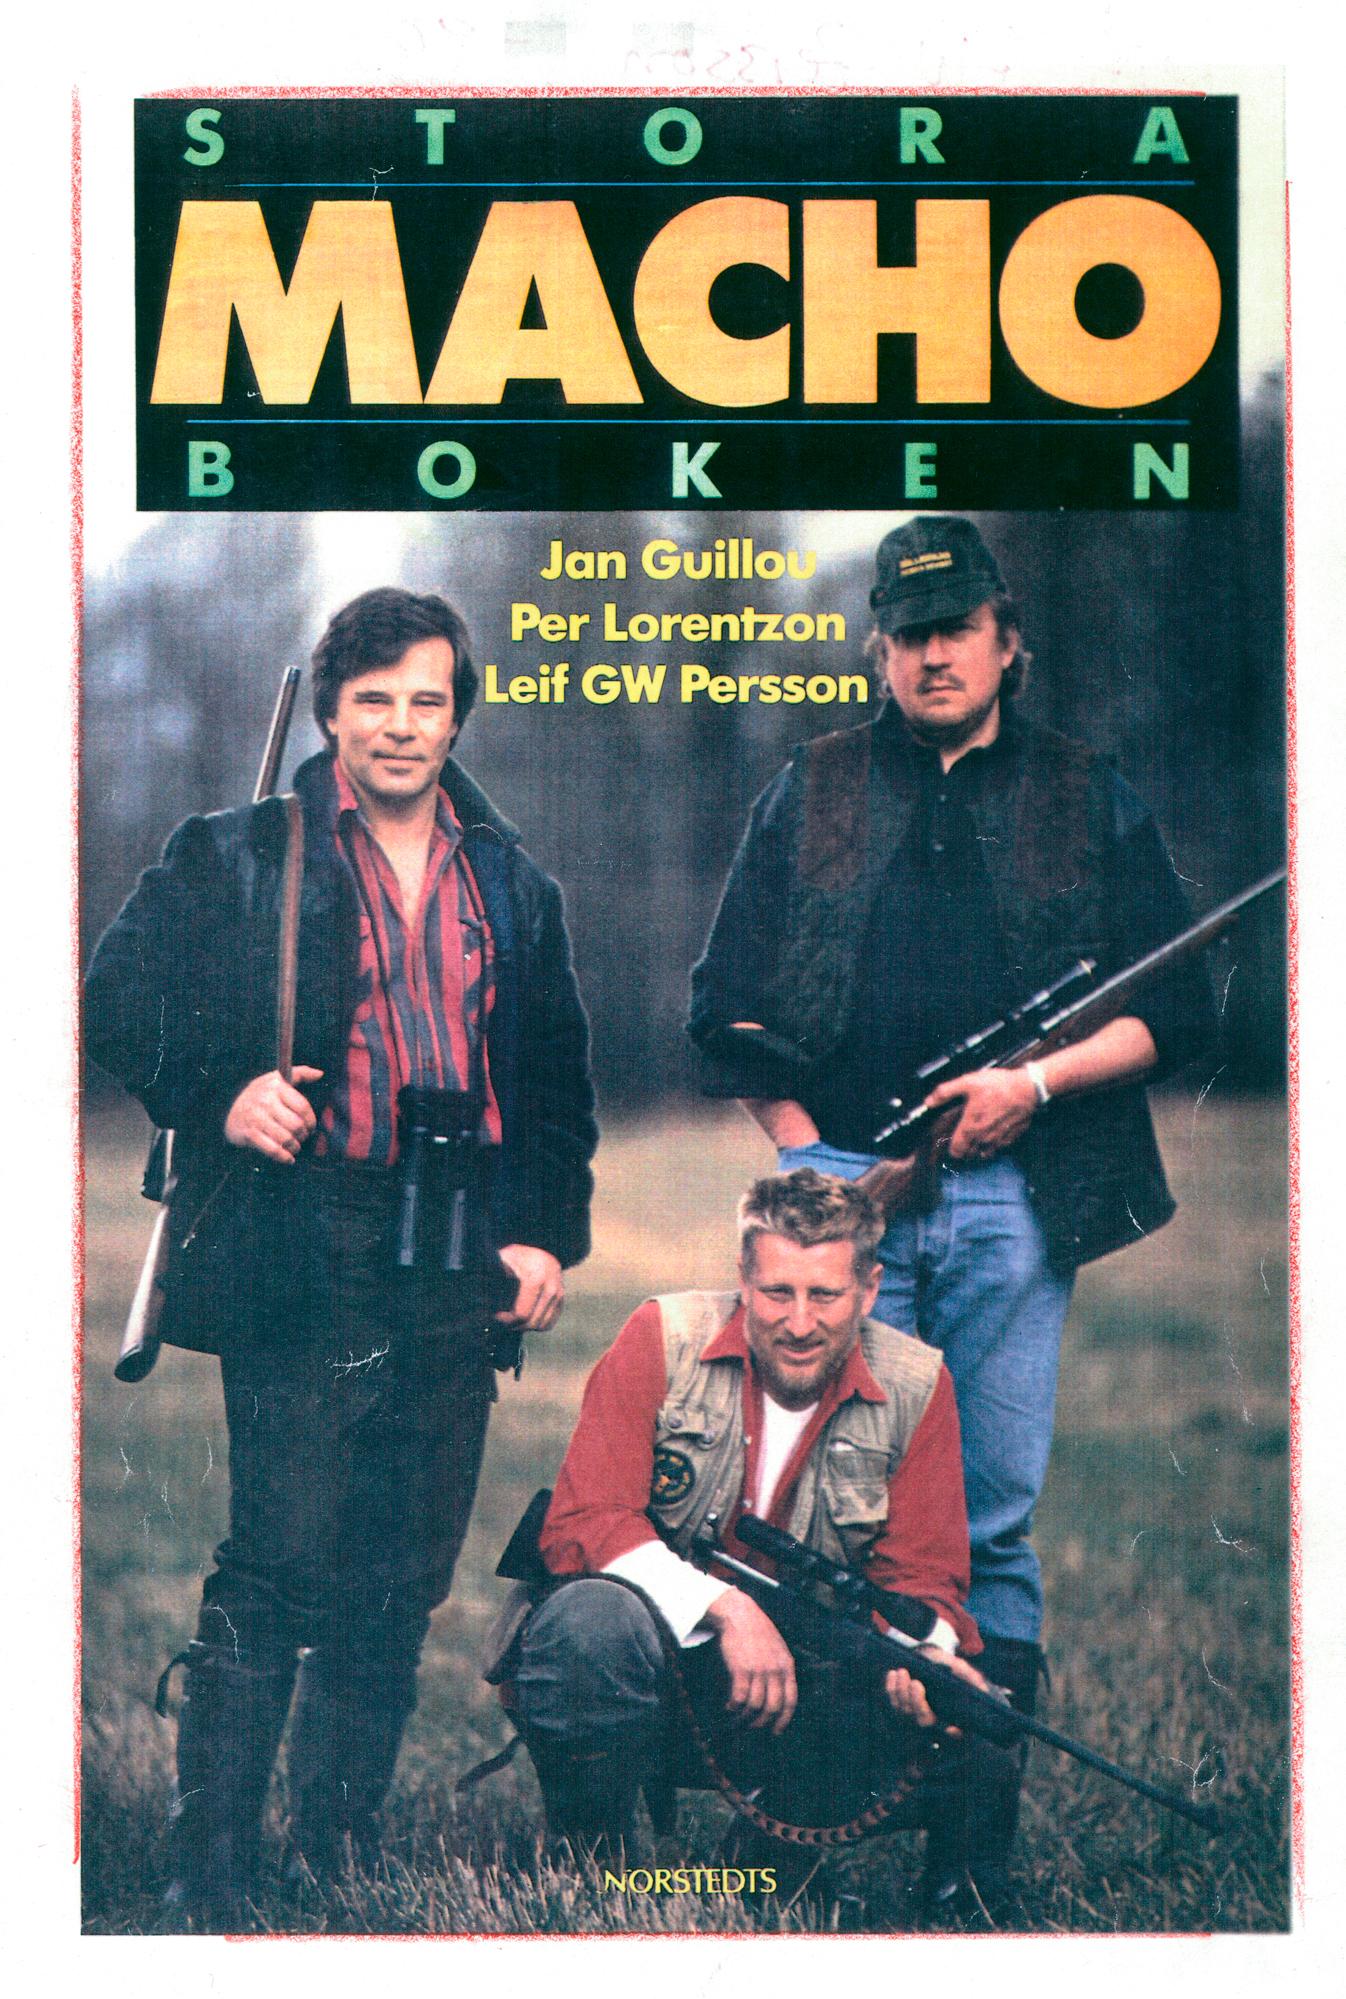 "Stora machoboken" från 1991, tillsammans med Jan Guillou och Pär Lorentzon.